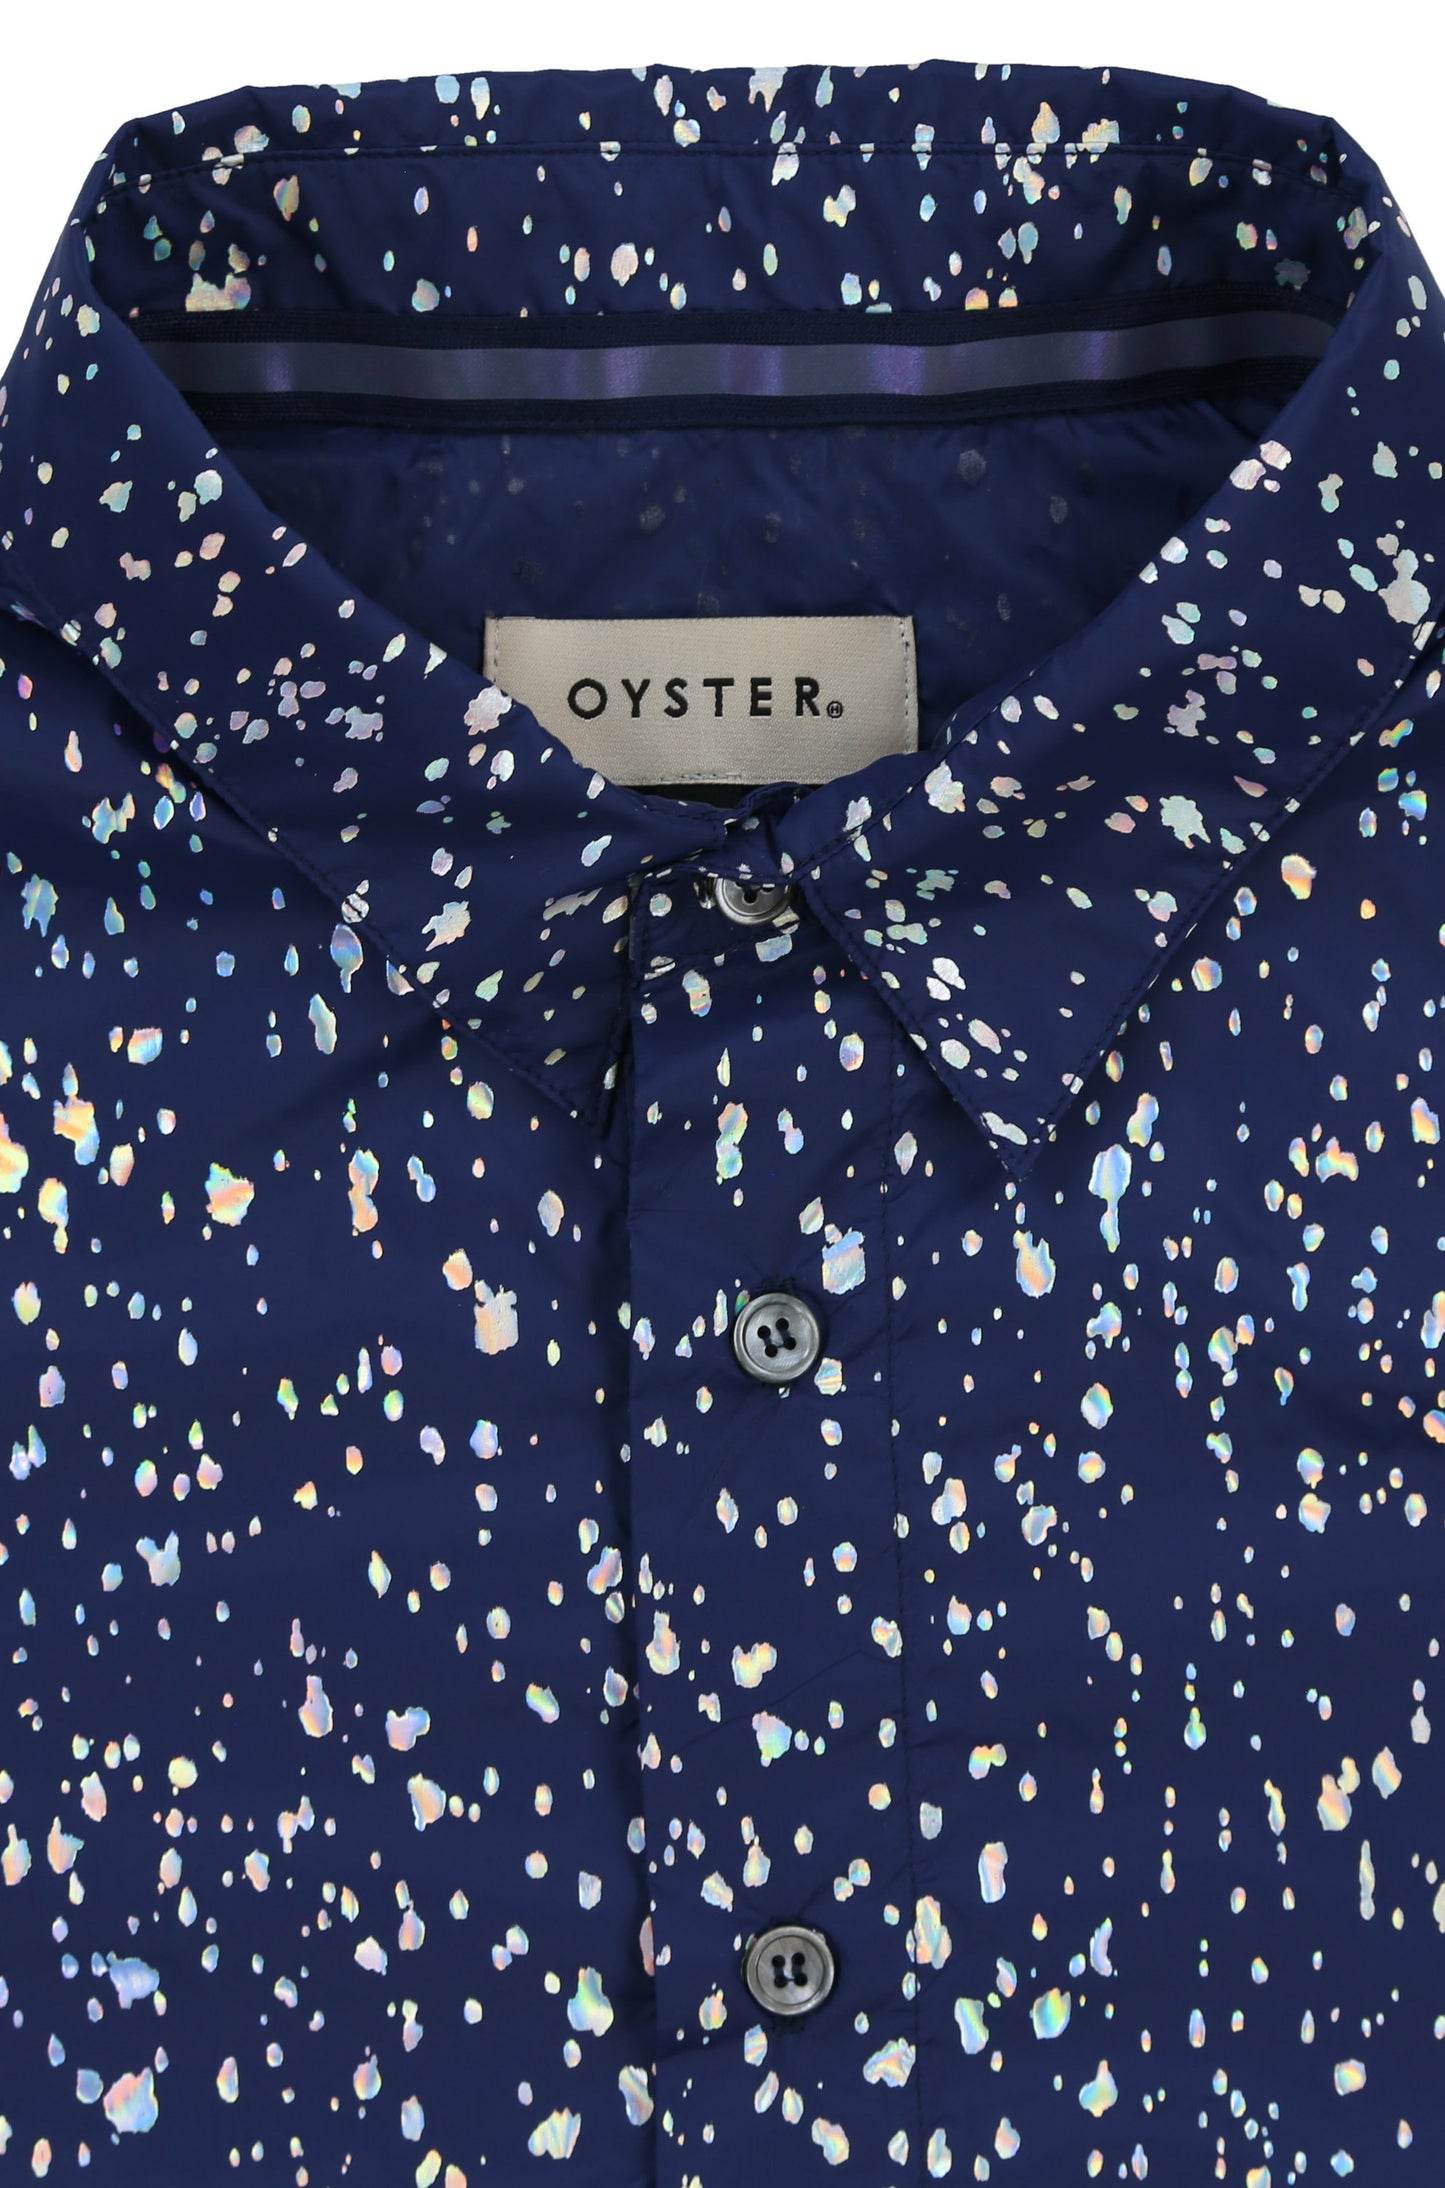 Oyster Pearl Splatter SS Button Up (Navy Iridescent)